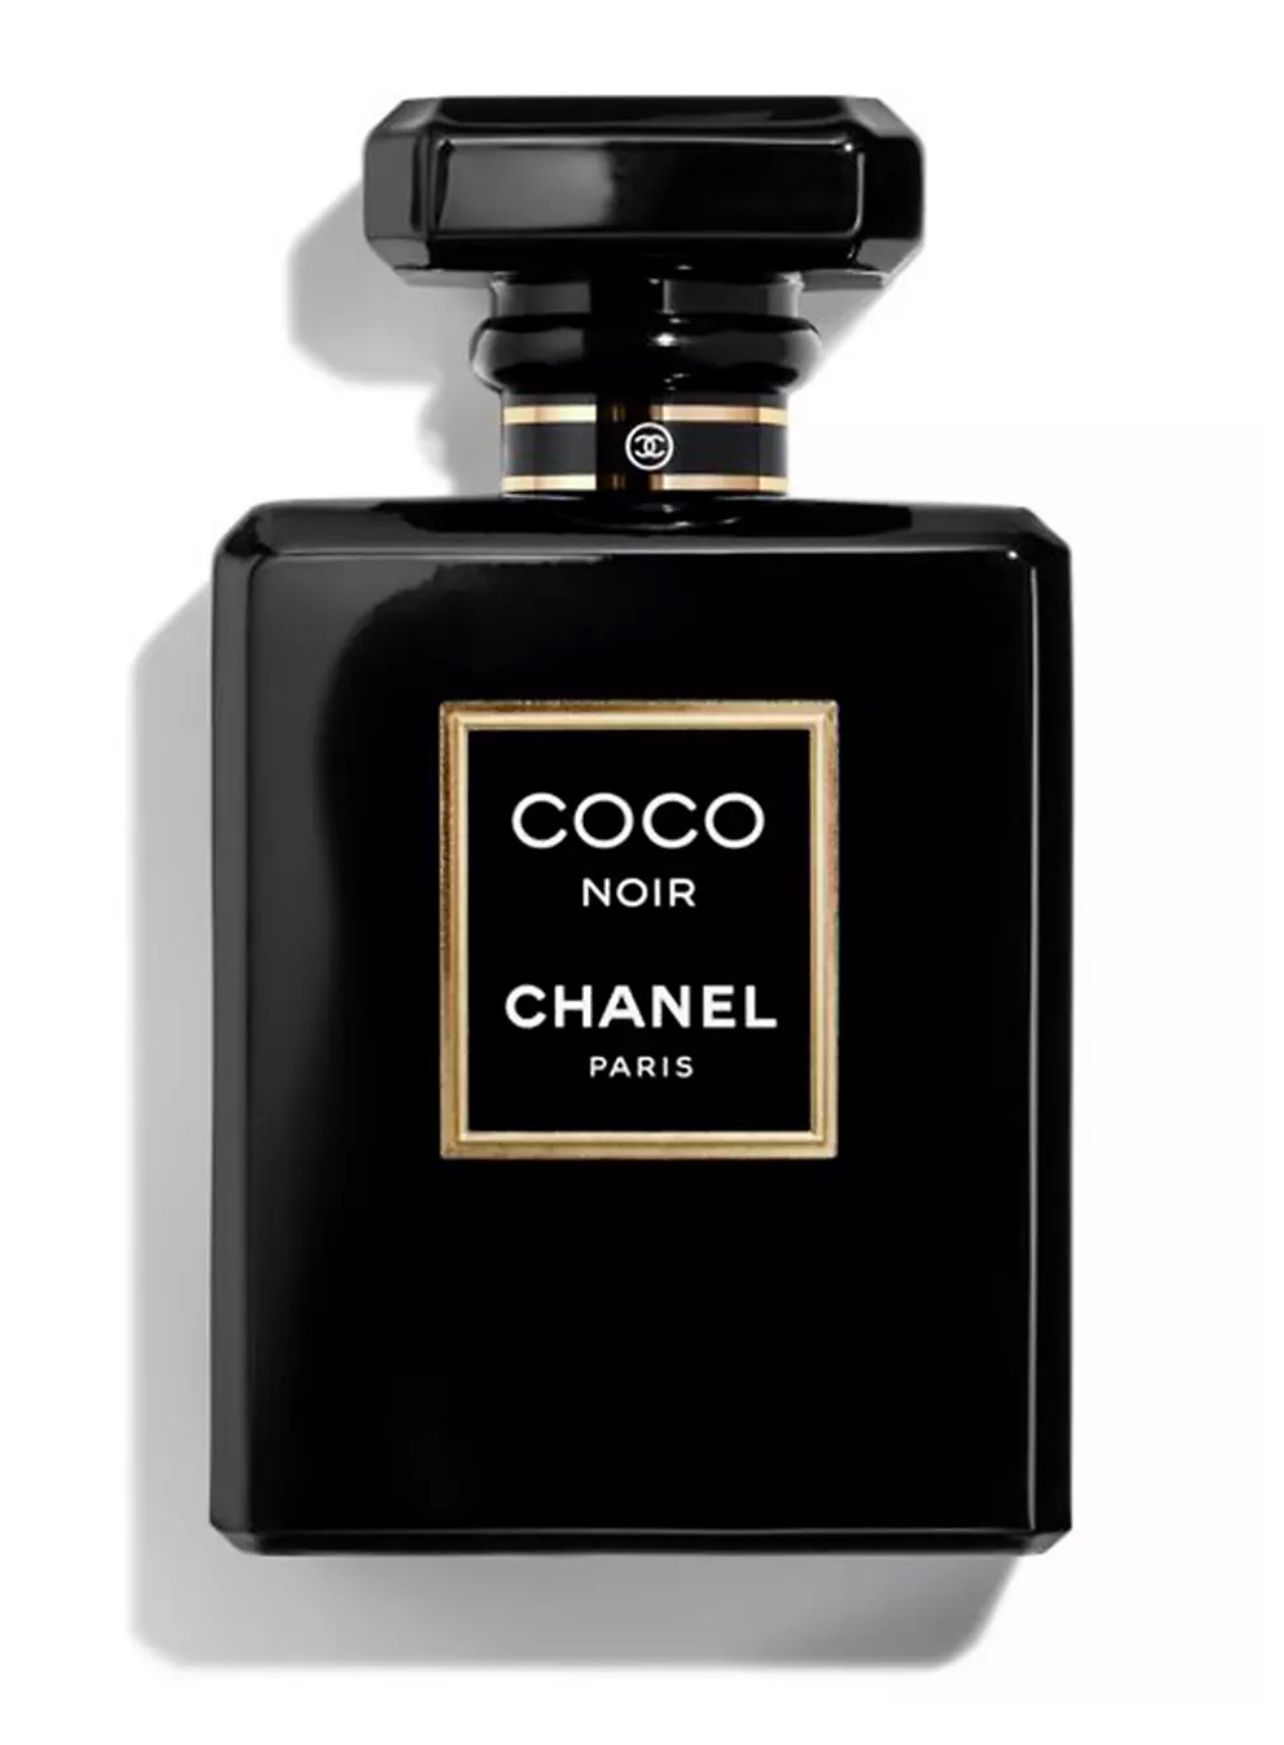 “Exquisite CHANEL COCO NOIR - Enigmatic Eau de Parfum for Women - $30”